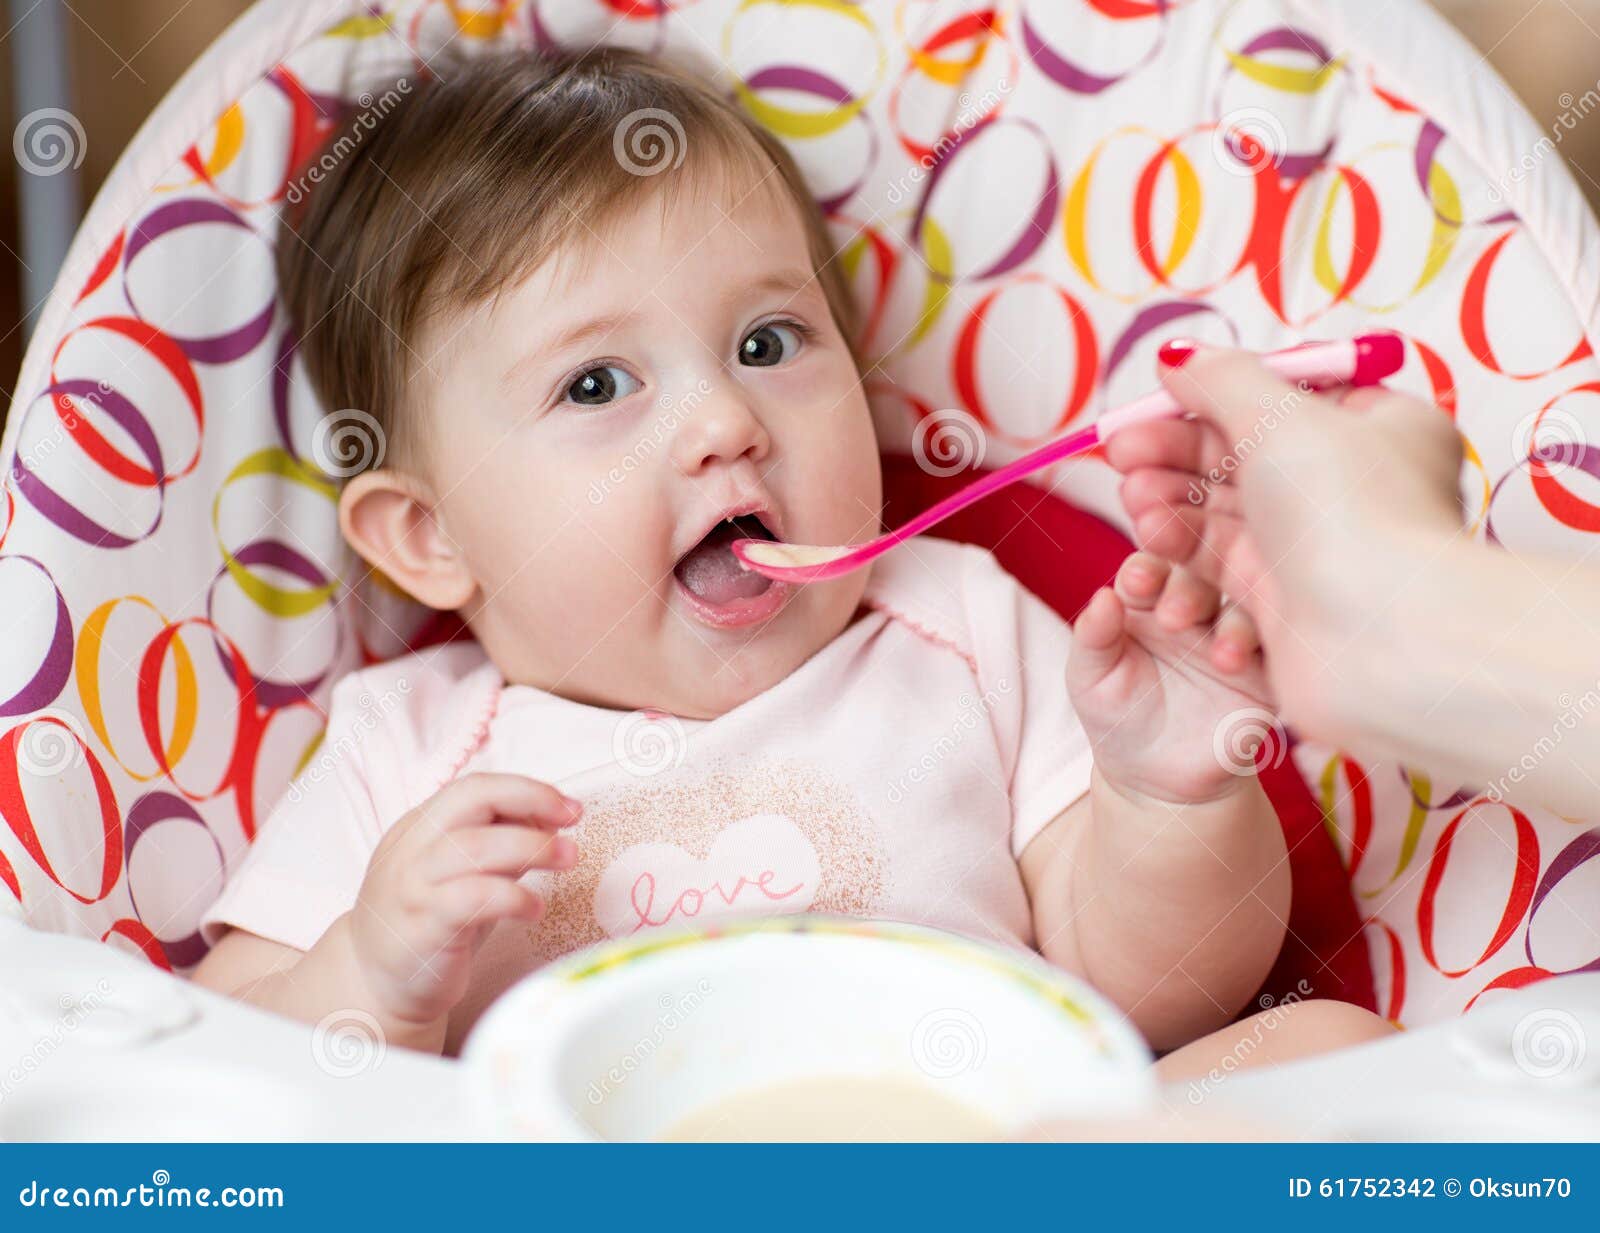 https://thumbs.dreamstime.com/z/baby-kid-girl-eating-food-mother-help-cute-61752342.jpg